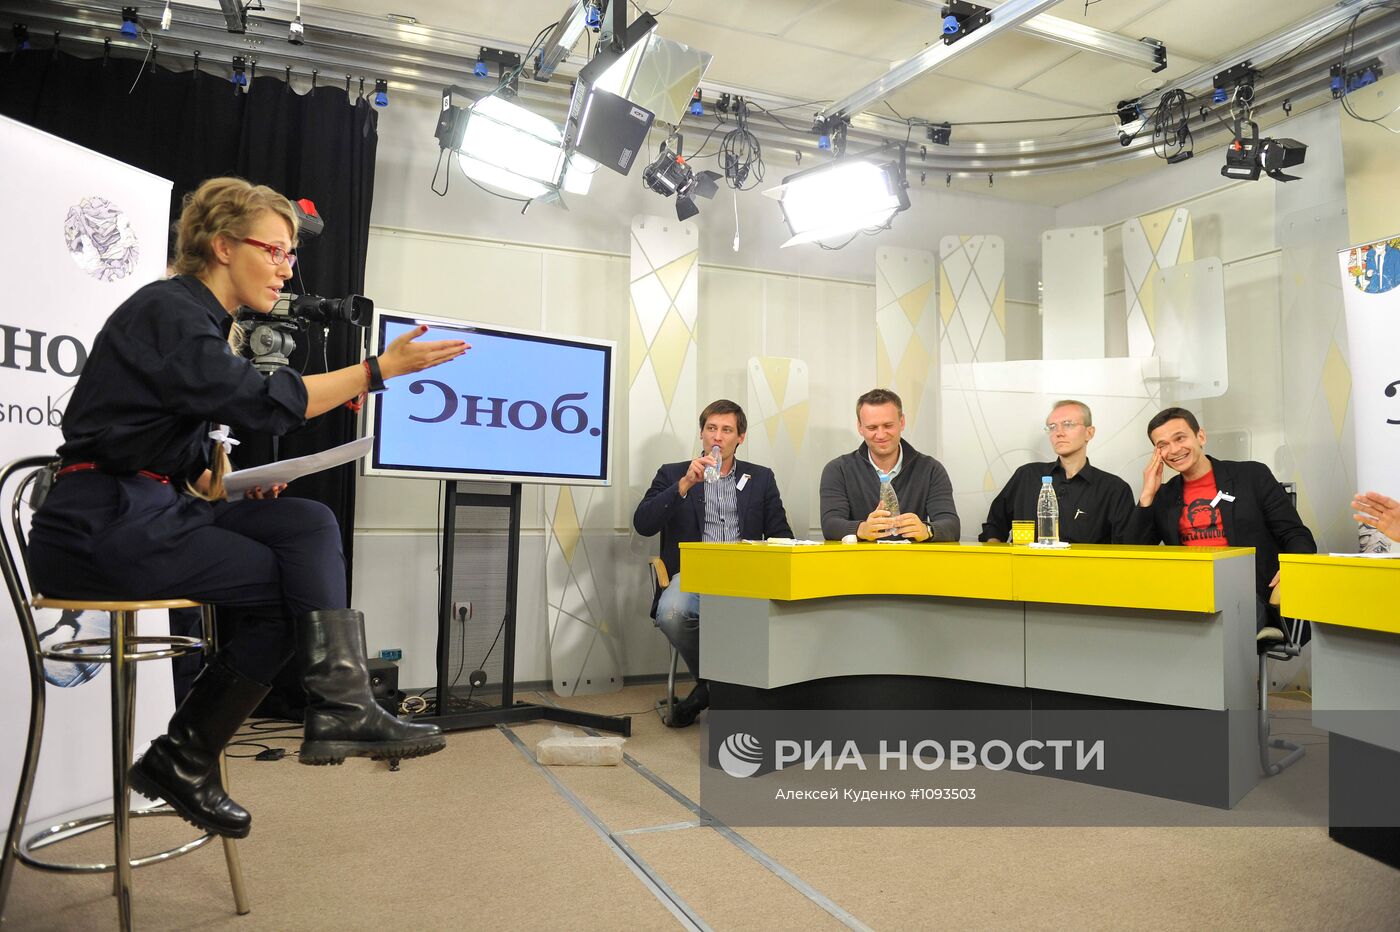 Прямой эфир из Астрахани программы Ксении Собчак "Госдеп-2"